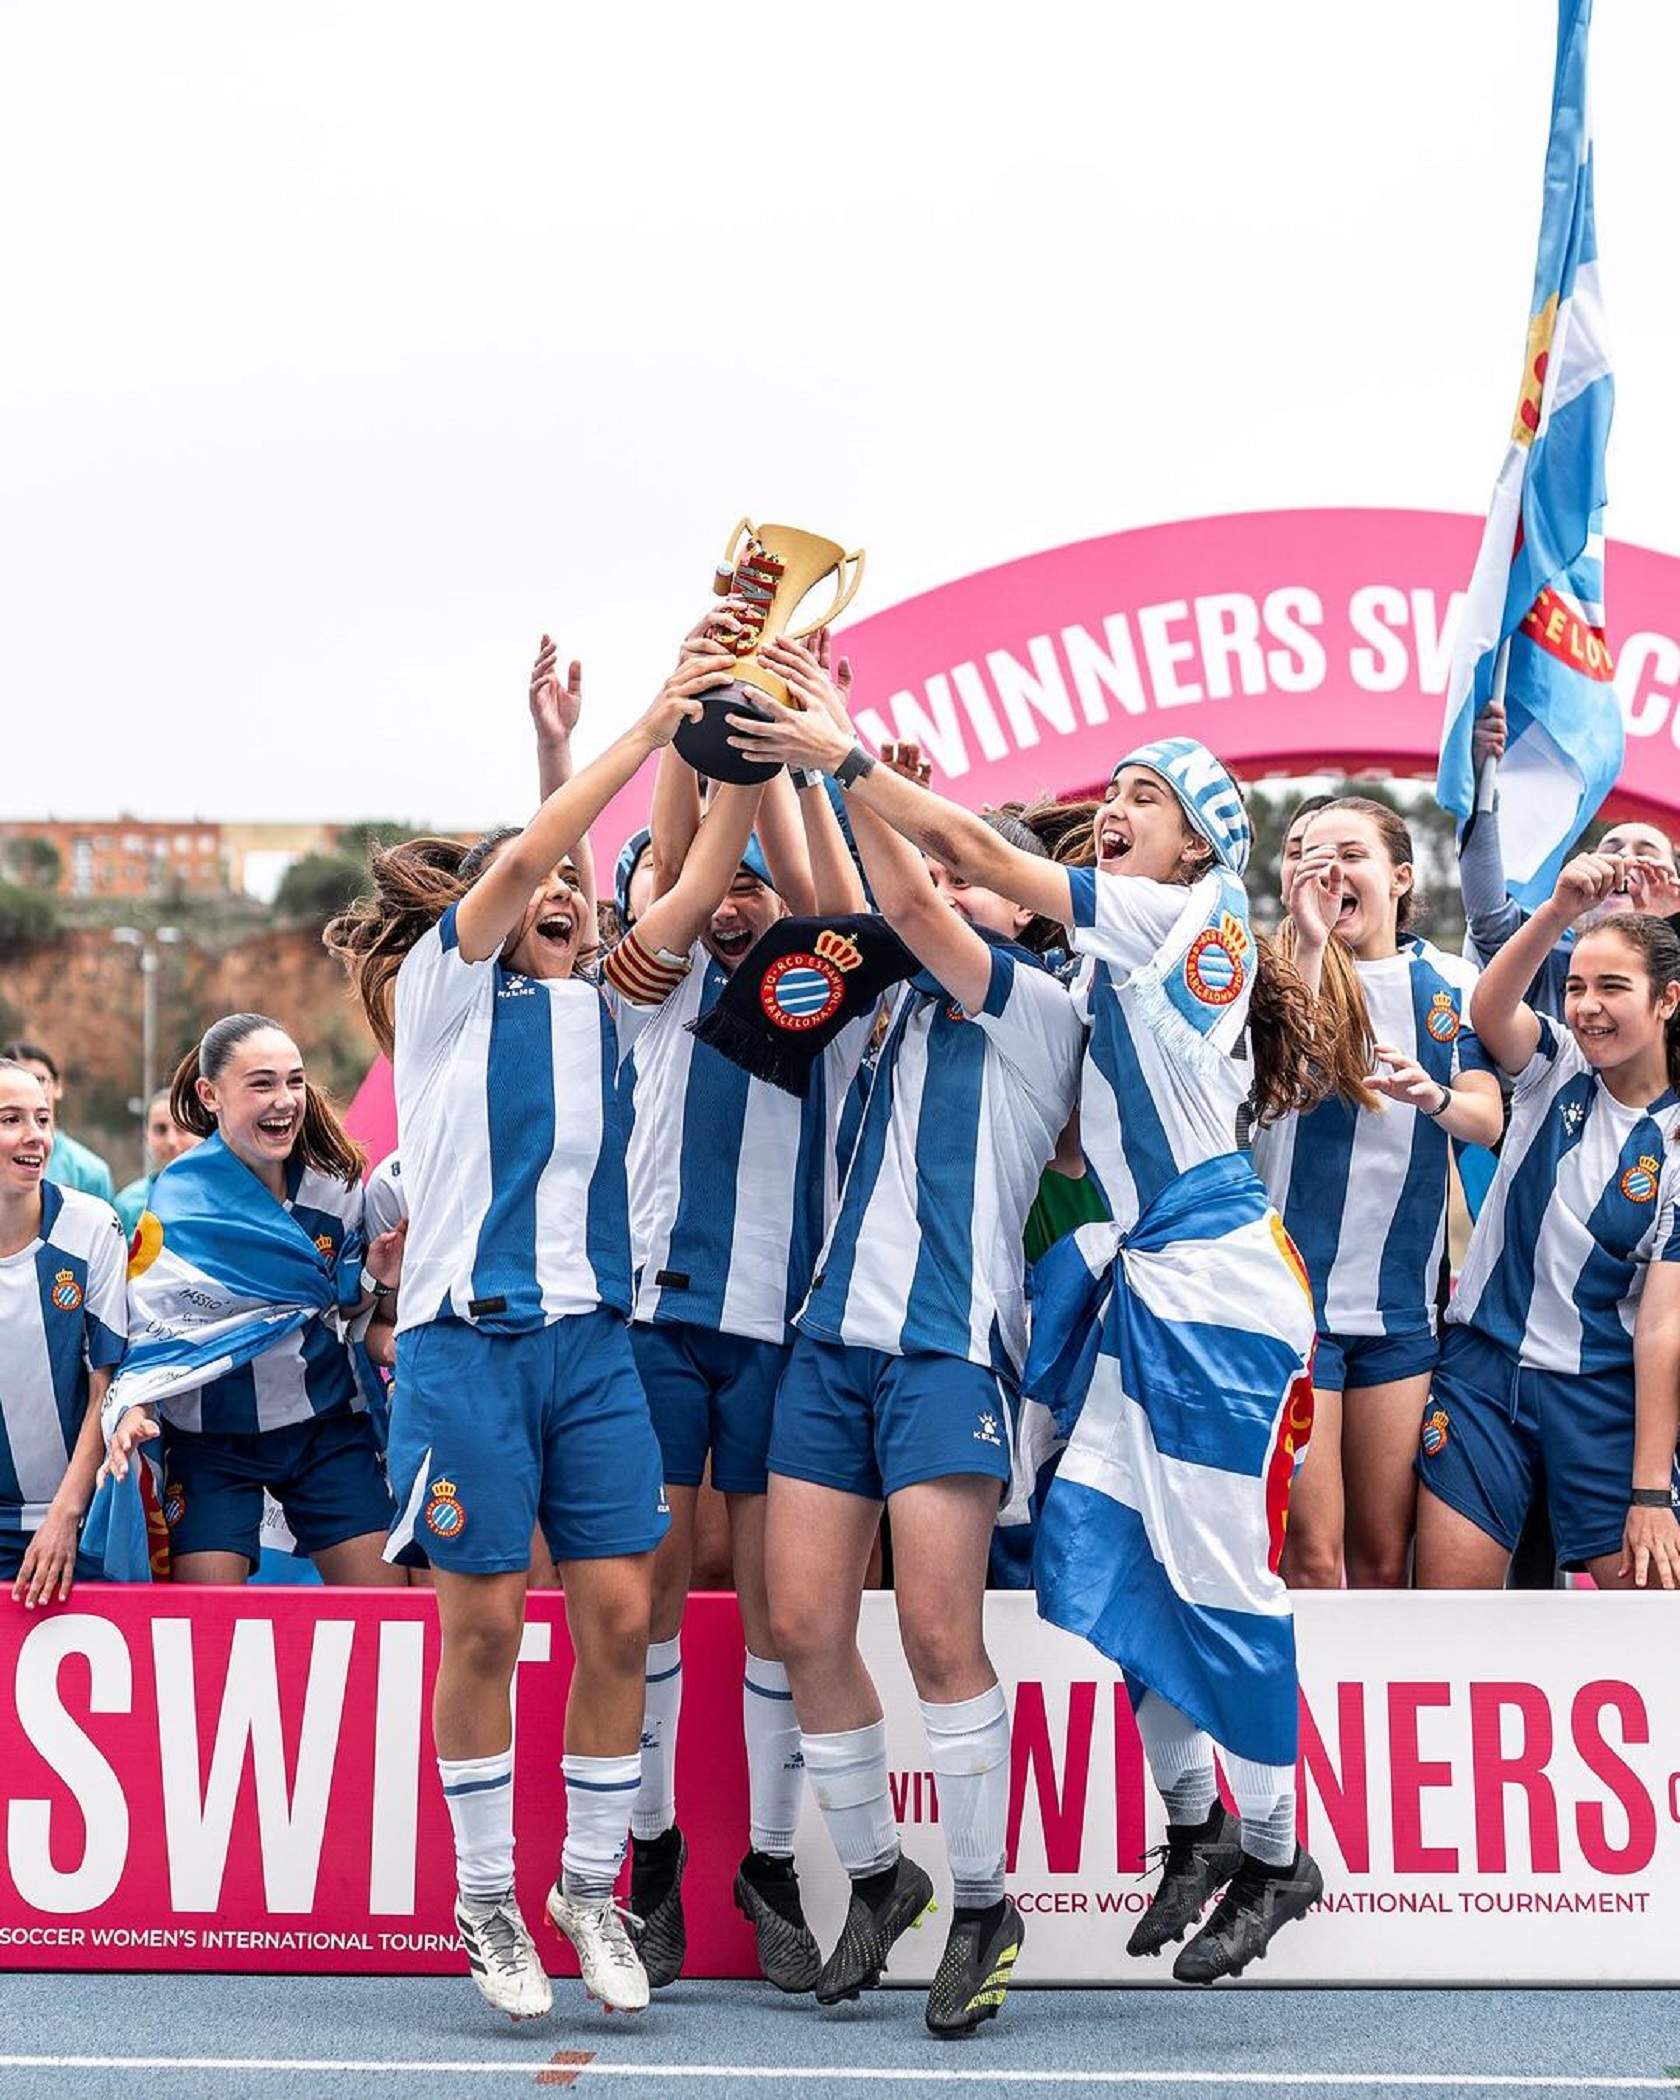 La Swit Cup se reafirma como exponente del fútbol base femenino con un éxito rotundo en su segunda edición